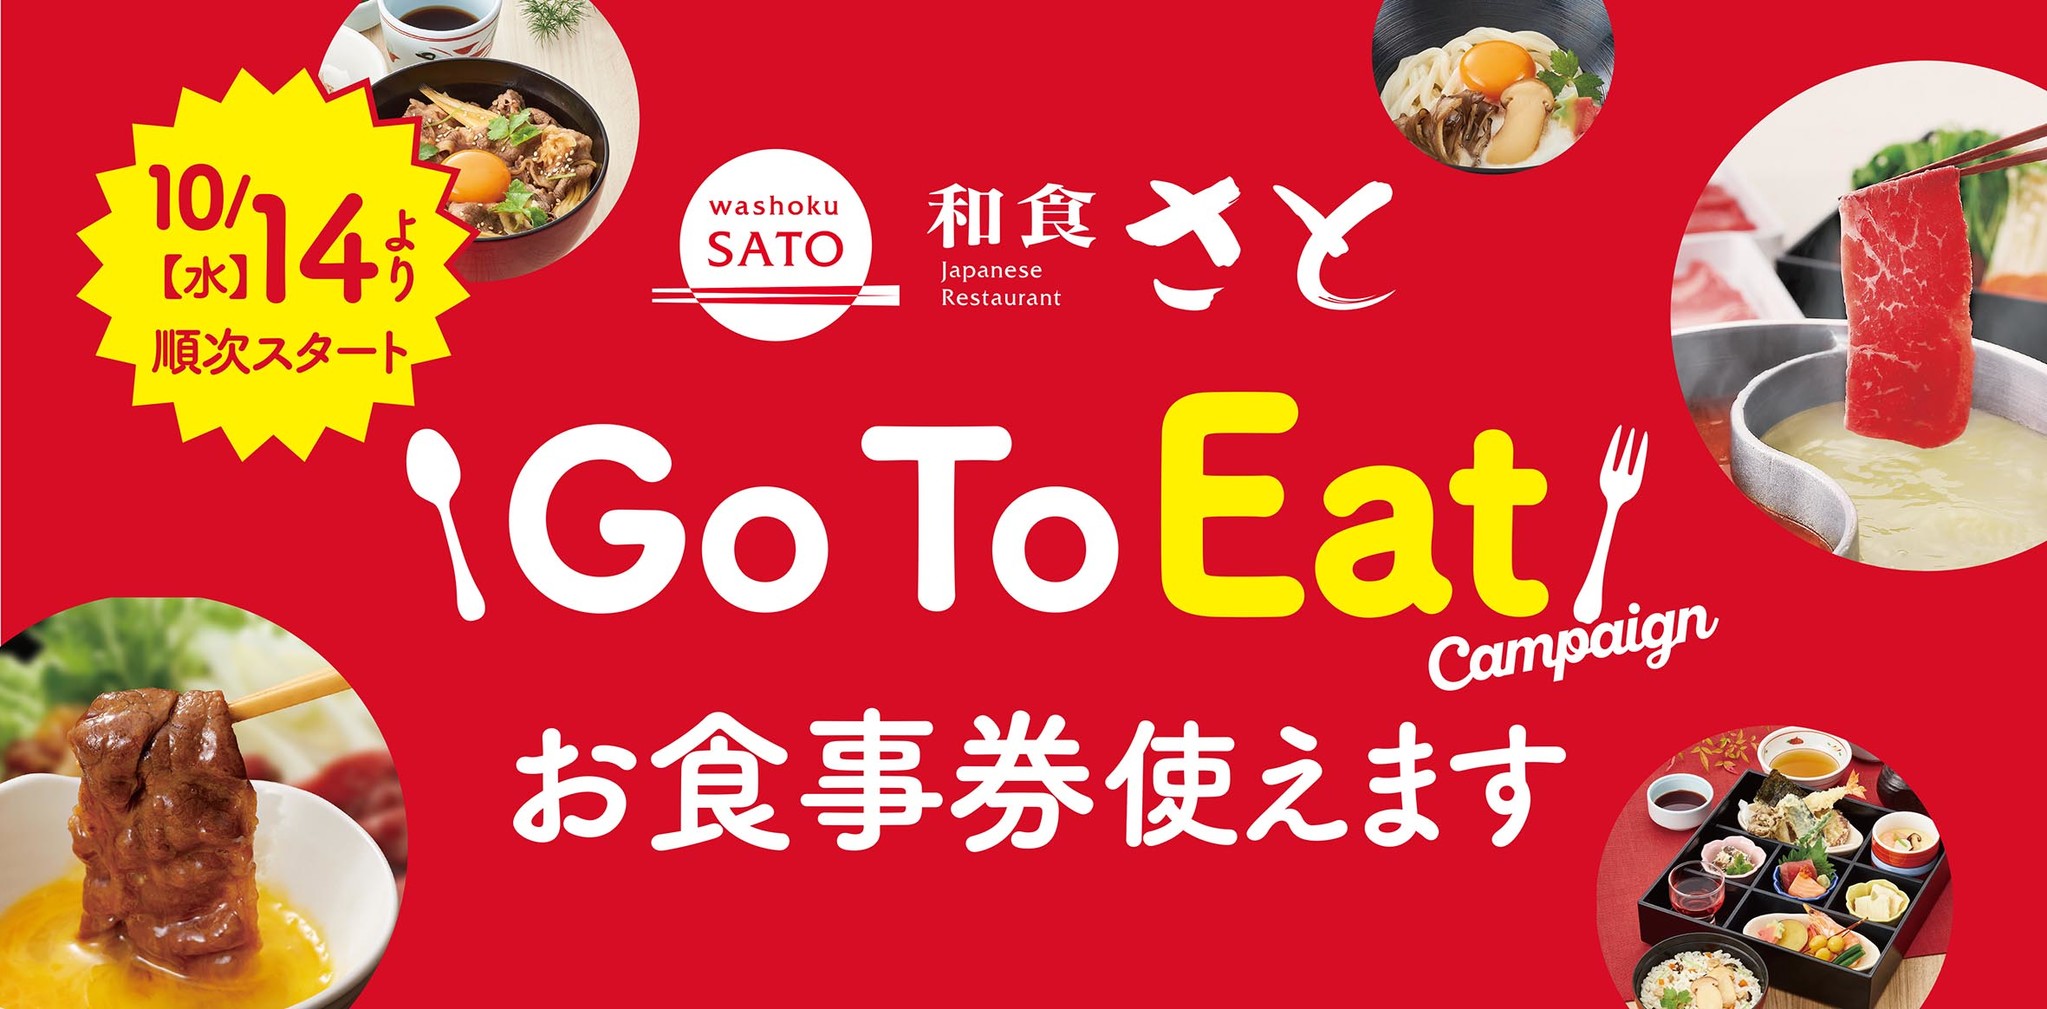 和食さと Go To Eat キャンペーン お食事券が全店で使えます サトフードサービス株式会社のプレスリリース